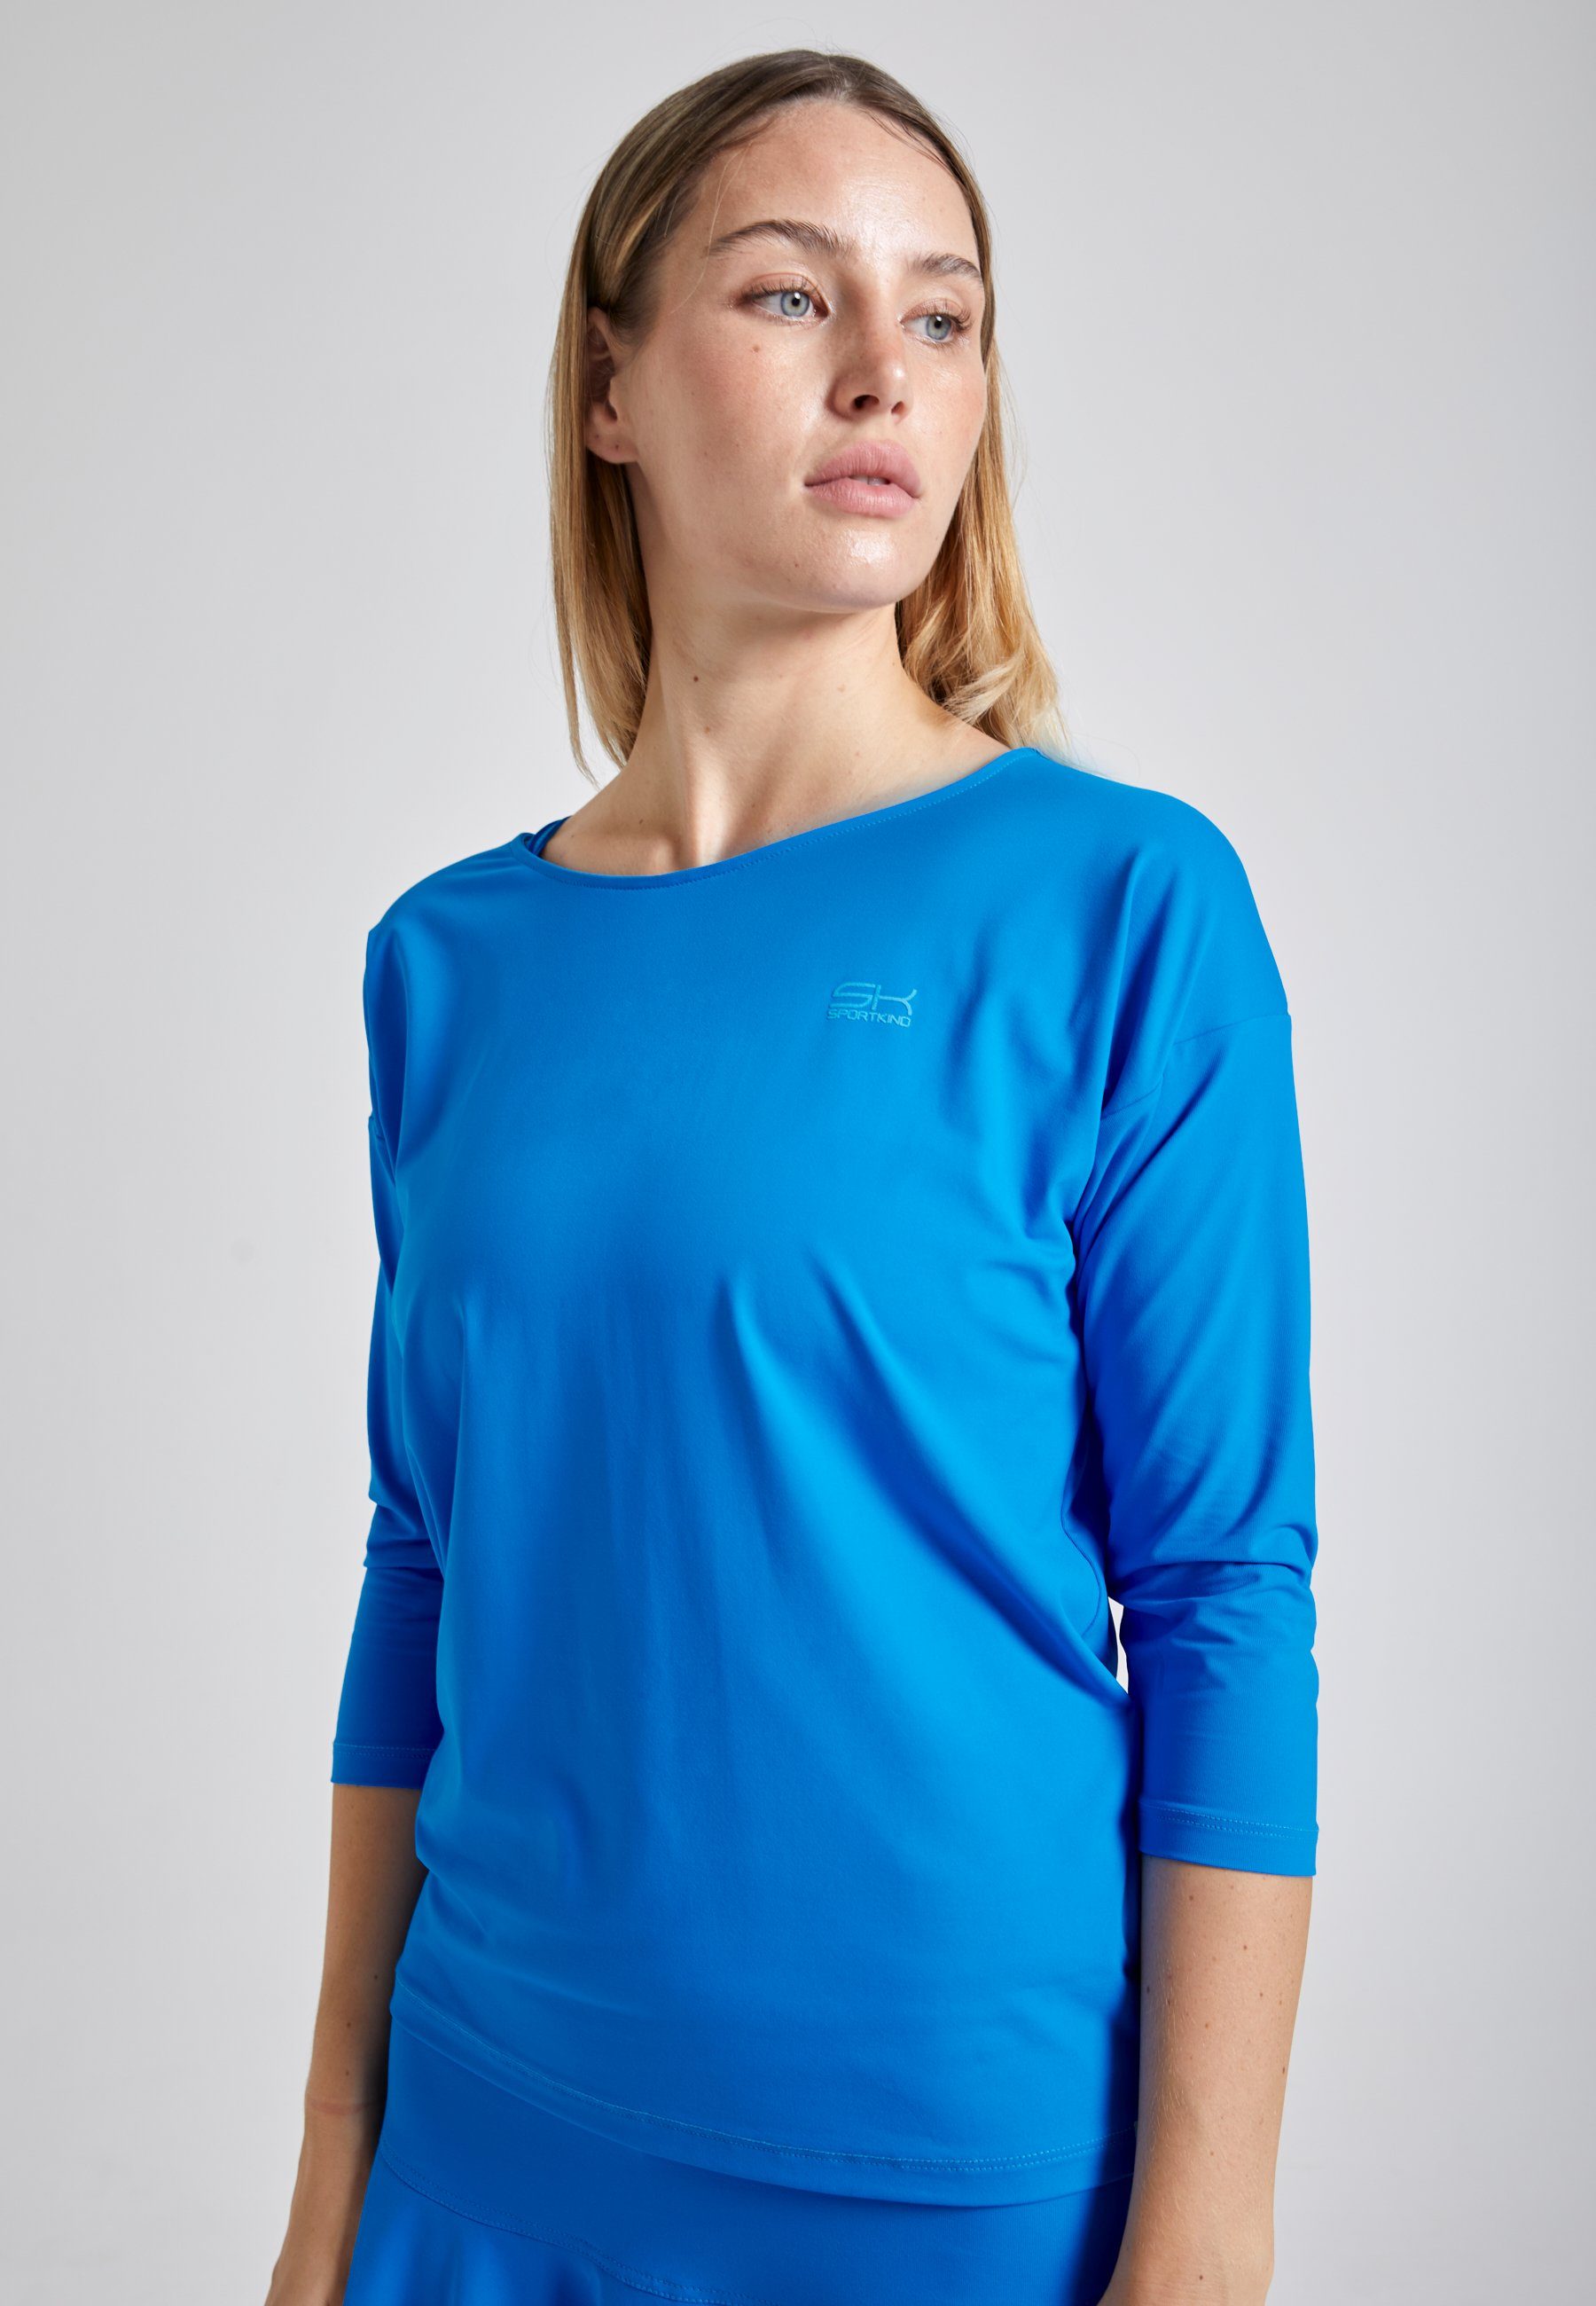 SPORTKIND & Funktionsshirt Fit Mädchen Damen Shirt 3/4 cyan Tennis blau Loose